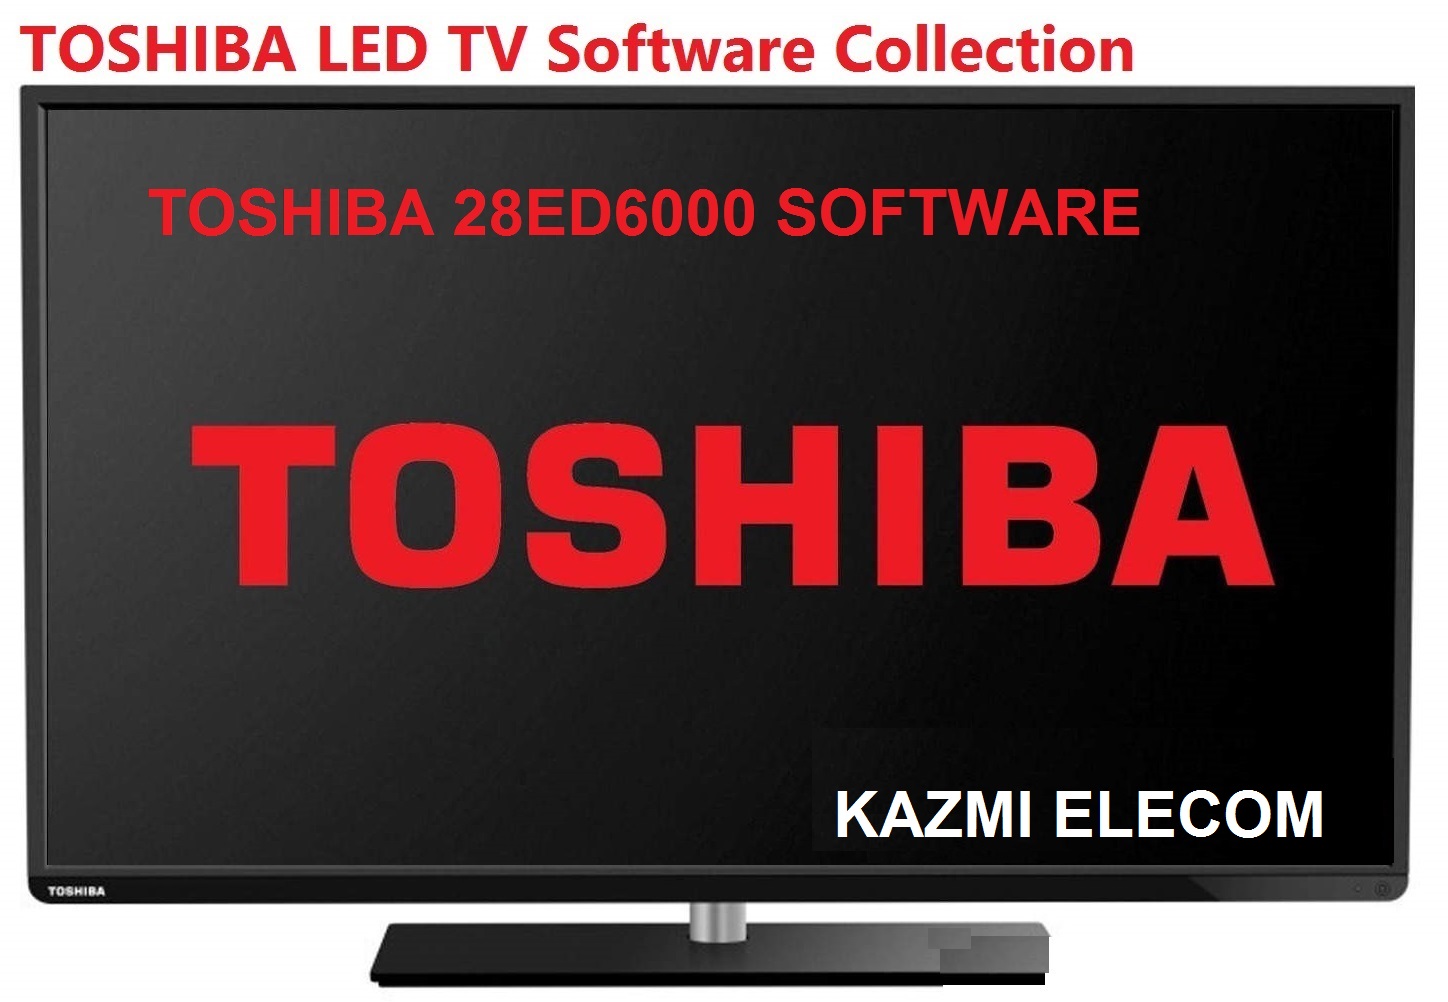 Toshiba 28Ed6000